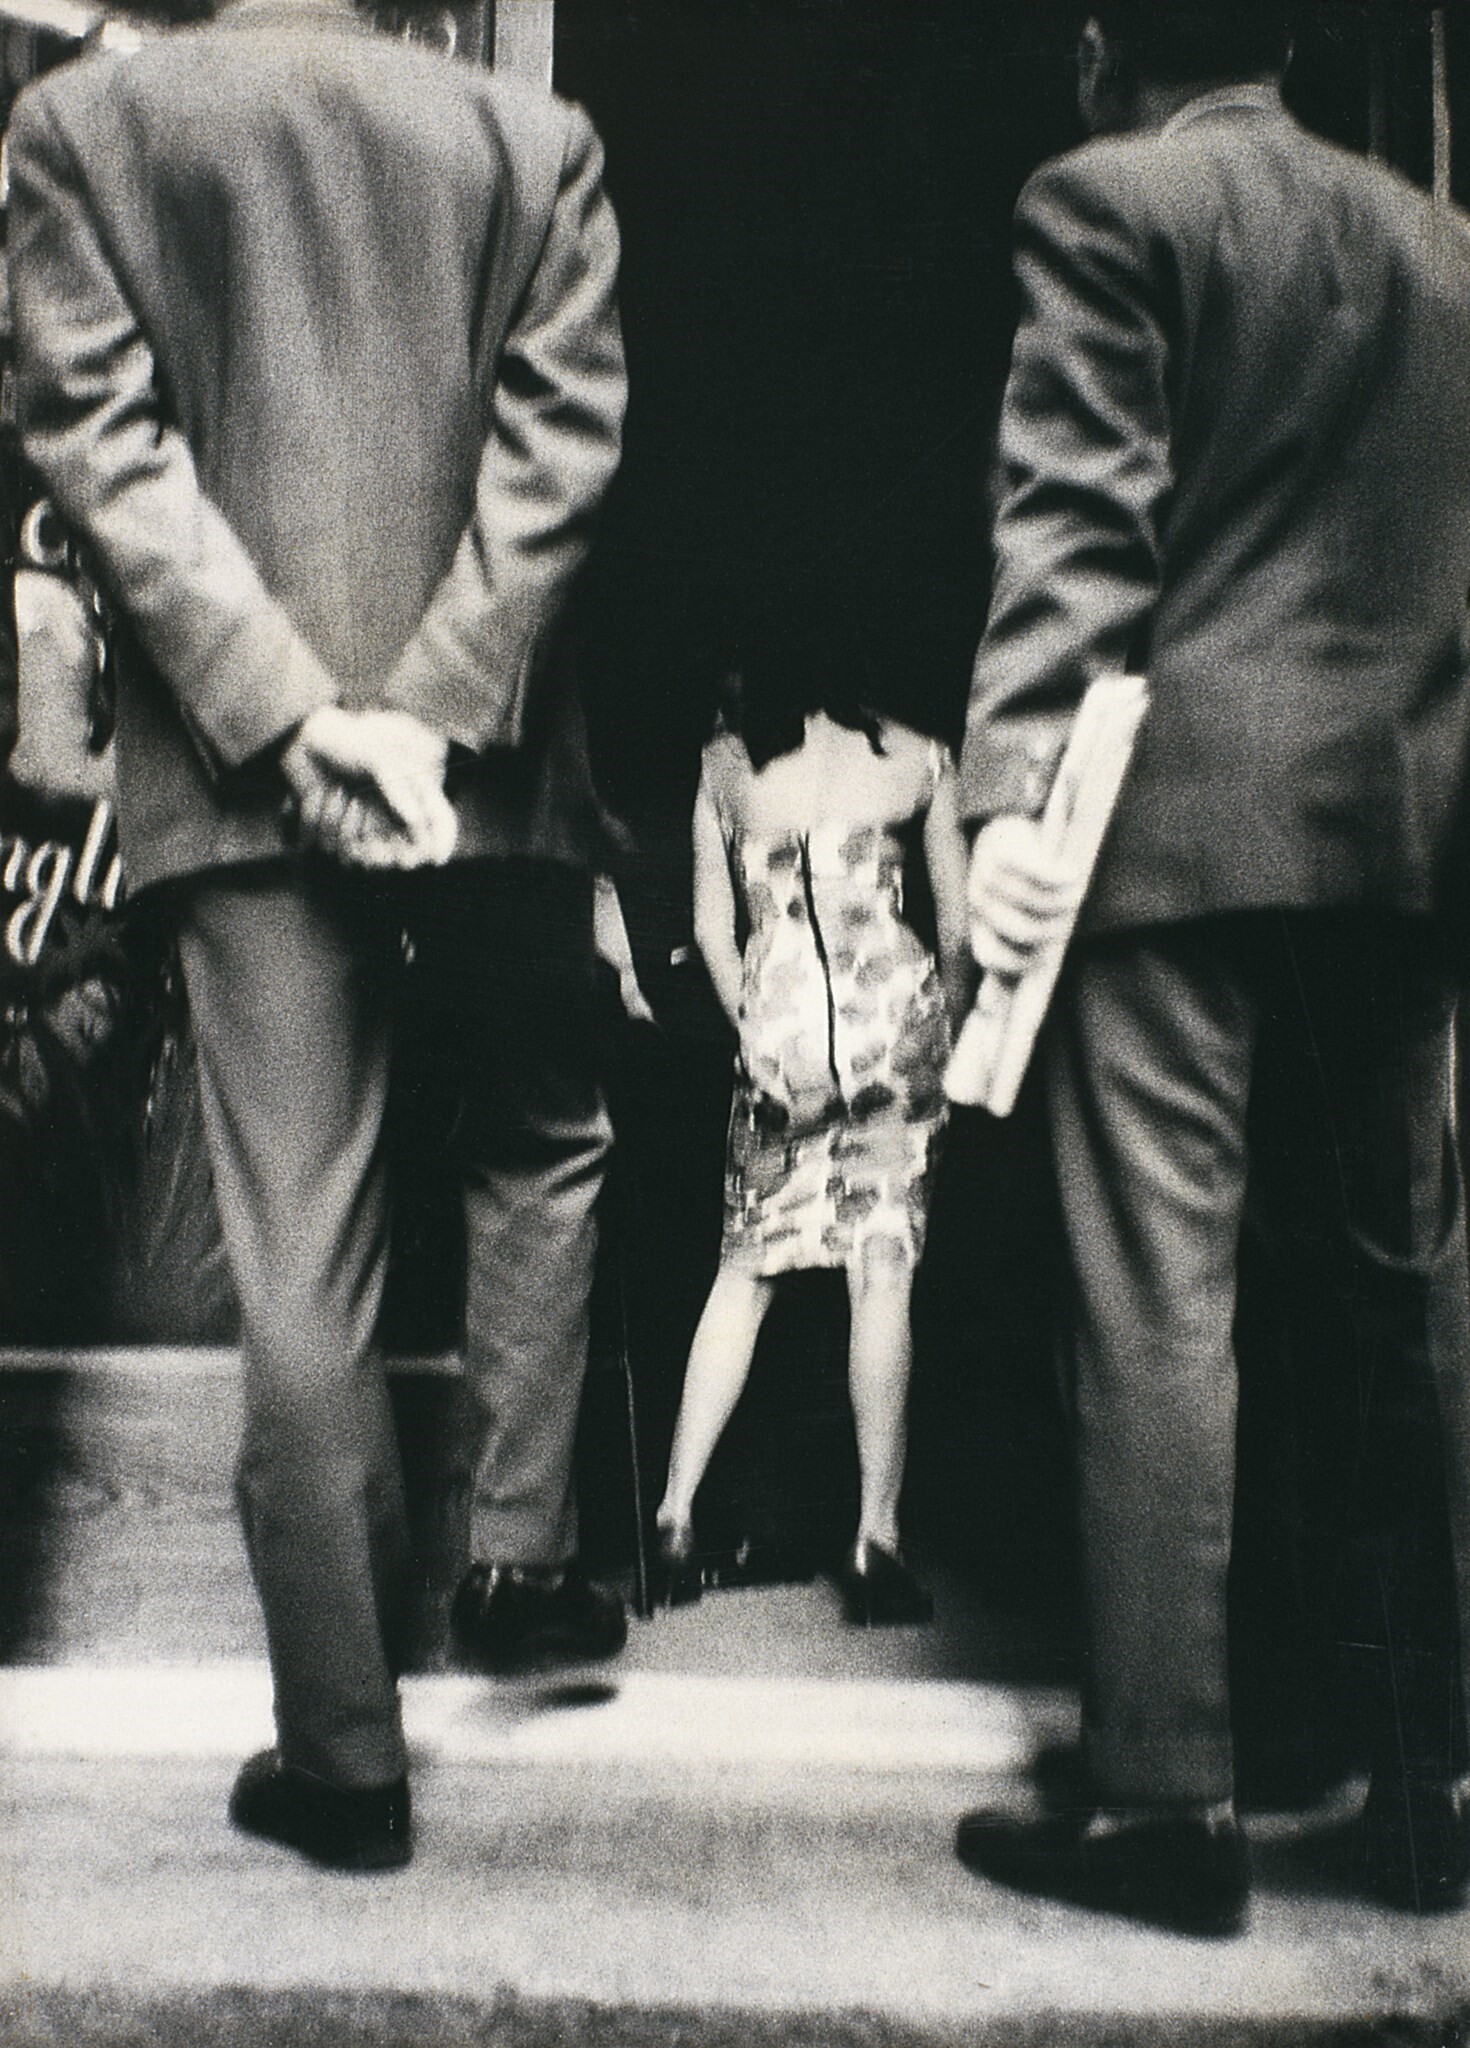 Из серии «Улица», ок. 1960. Фотограф Жоан Колом